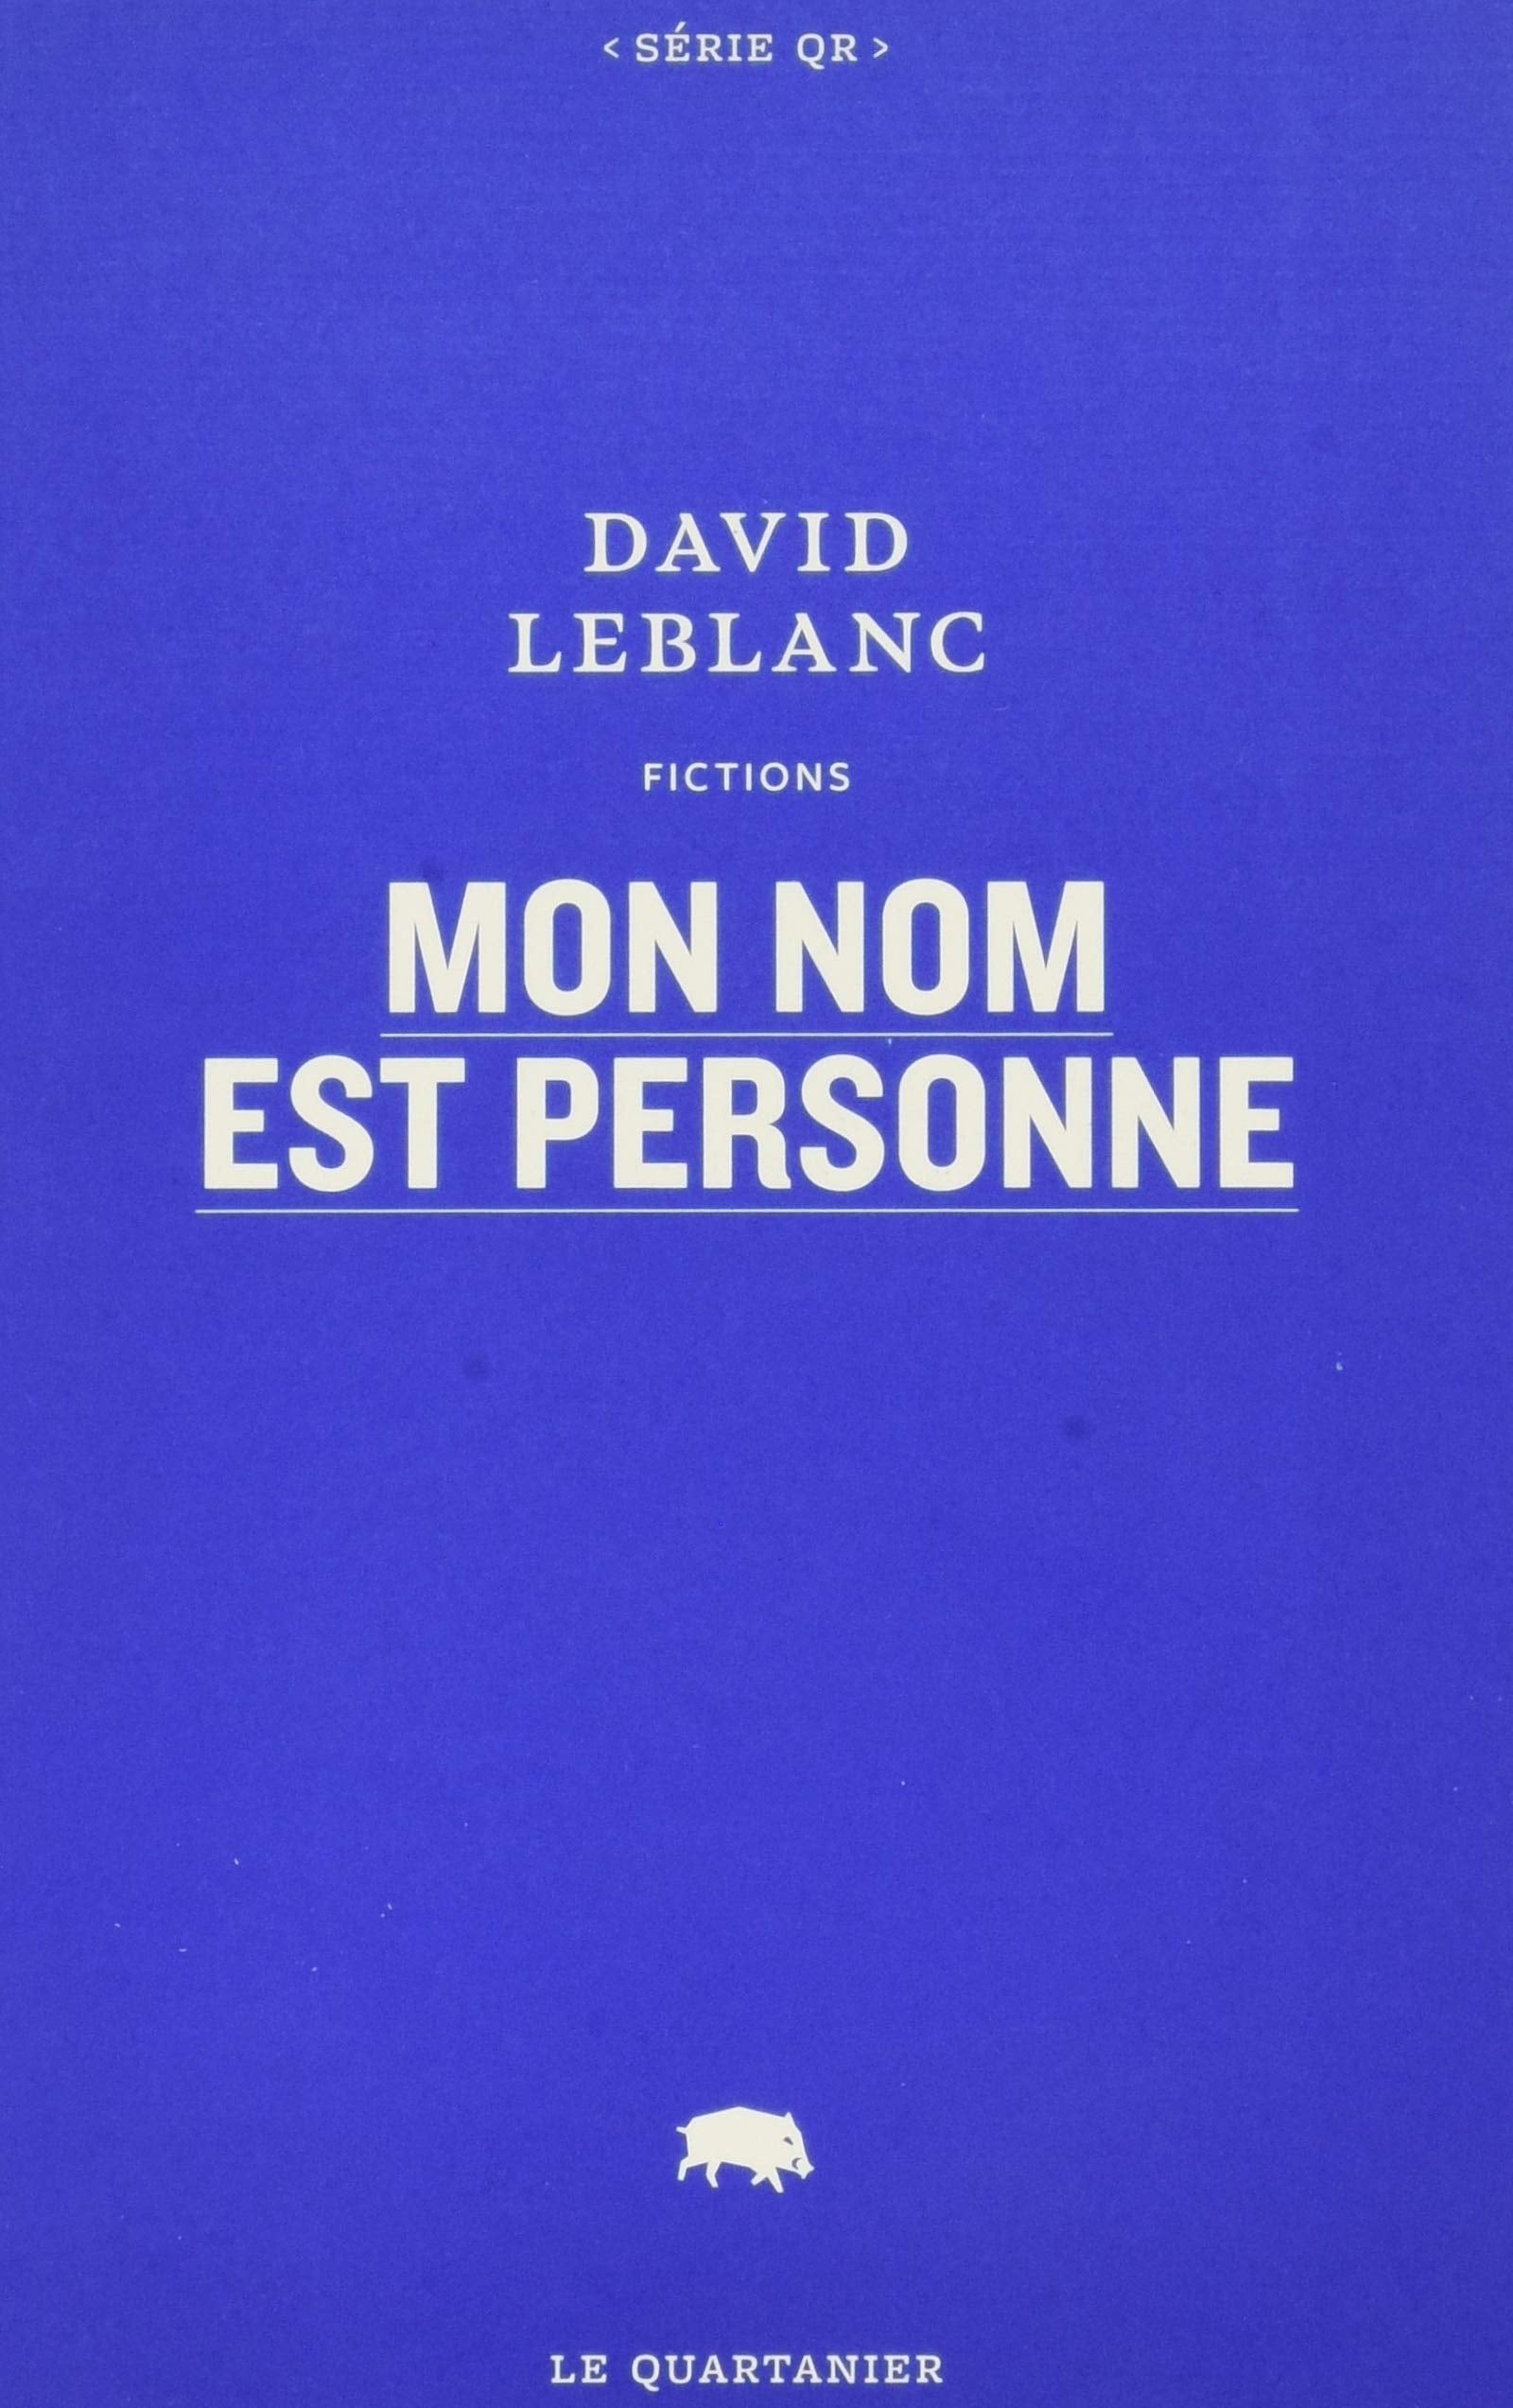 Livre ISBN 2923400585 QR # 38 : Mon nom est Personne (David Leblanc)